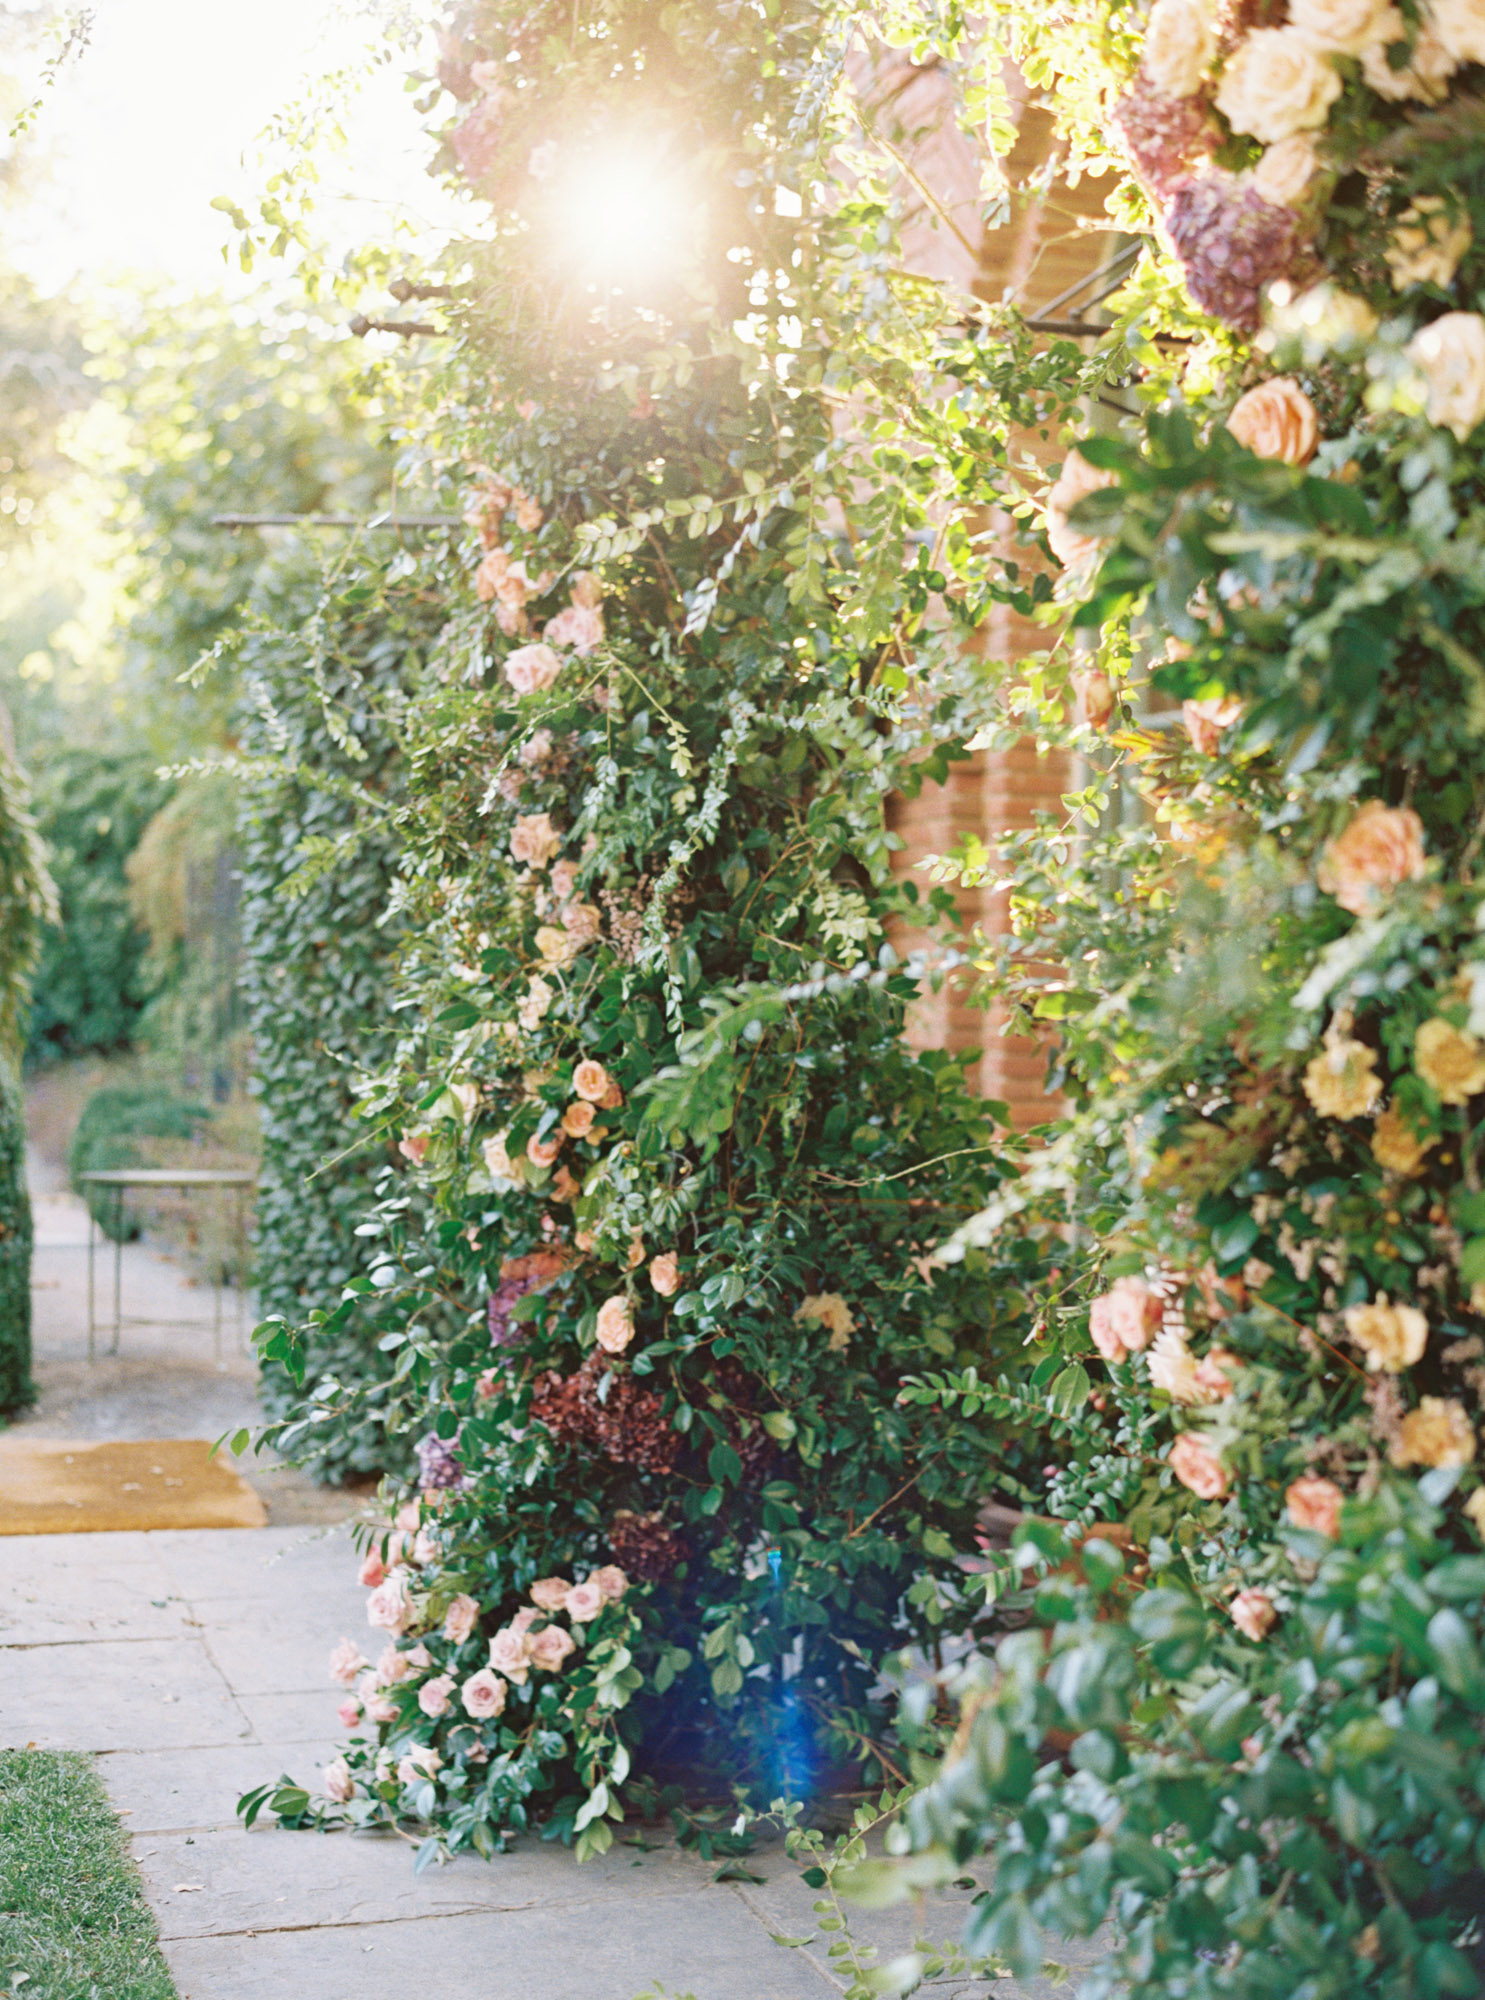 jp-liriano-photography-wedding-reception-decor-filoli-garden-california-36